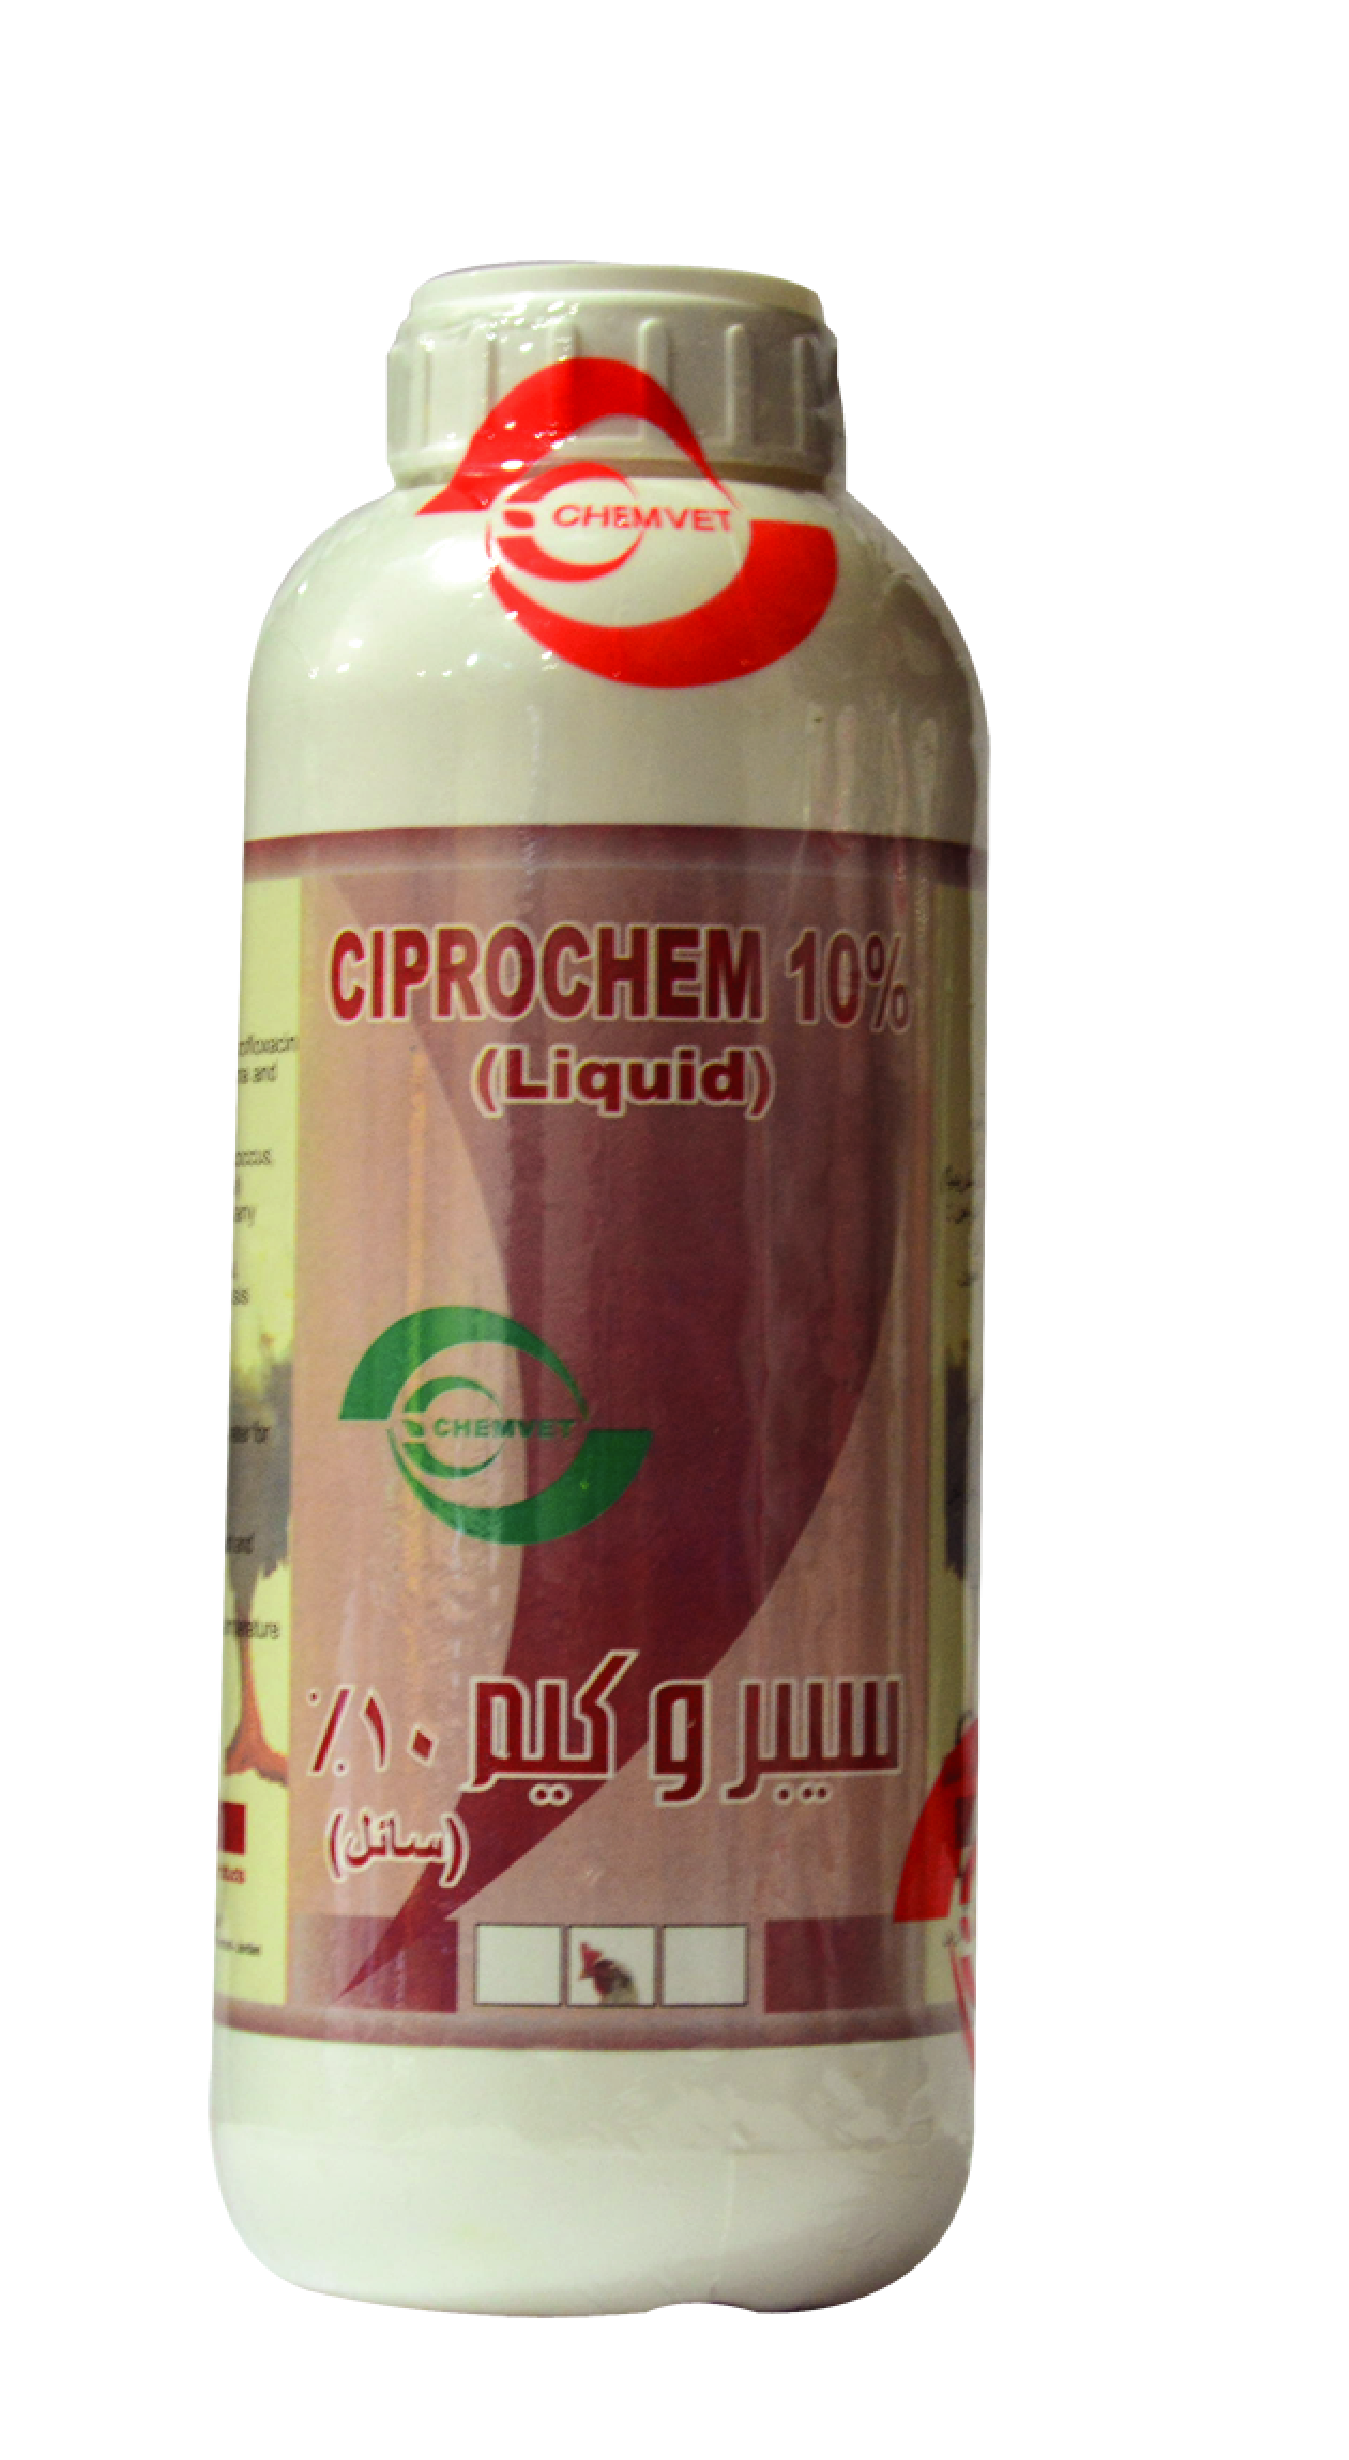 Ciprochem 10%